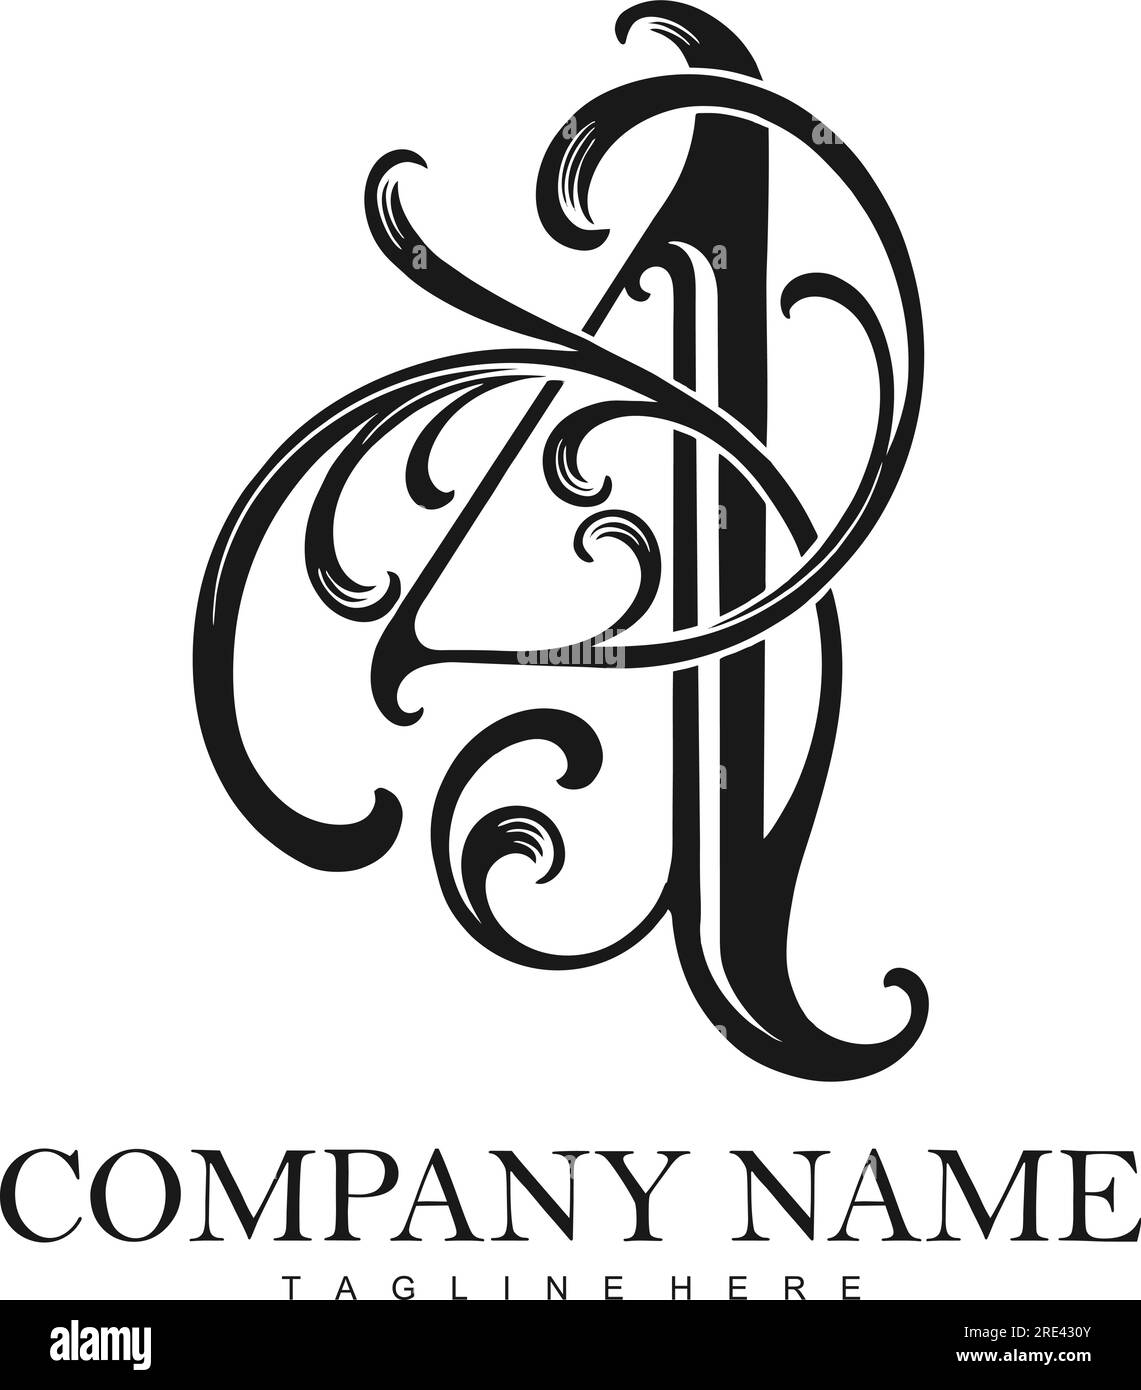 Illustrations vectorielles de silhouette de logo de monogramme vintage de numéro 4 glamour pour votre logo de travail, t-shirt de marchandise, autocollants et dessins d'étiquettes, affiche, Illustration de Vecteur